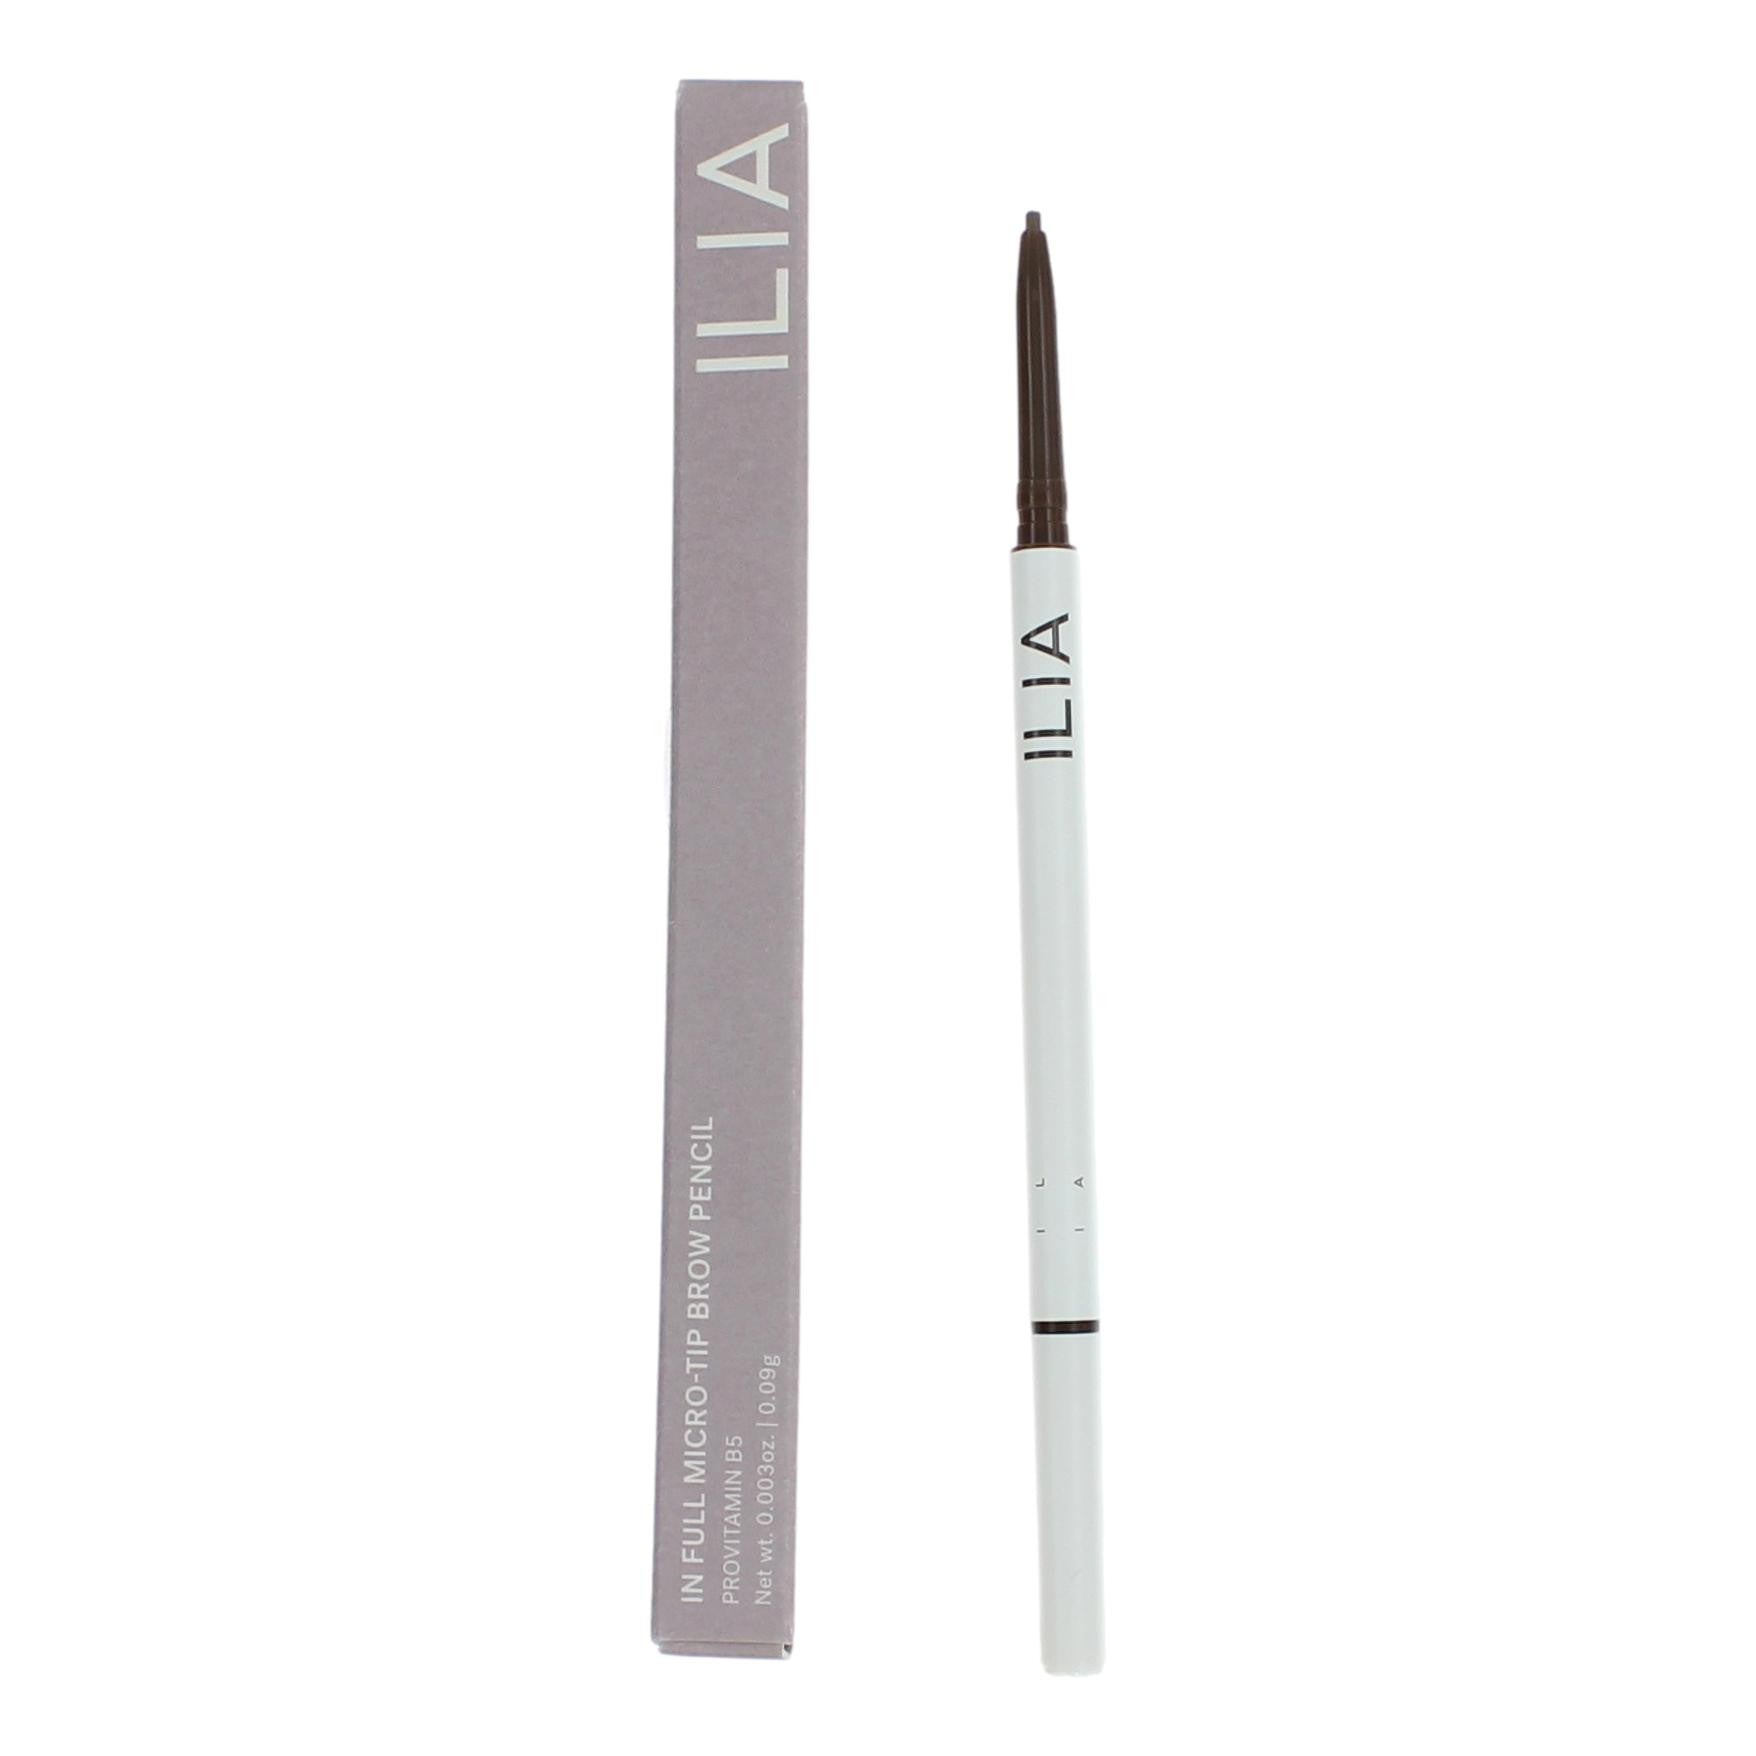 ILIA In Full Micro-Tip Brow Pencil by ILIA, .003oz Eyebrow Pencil - Soft Brown - Soft Brown